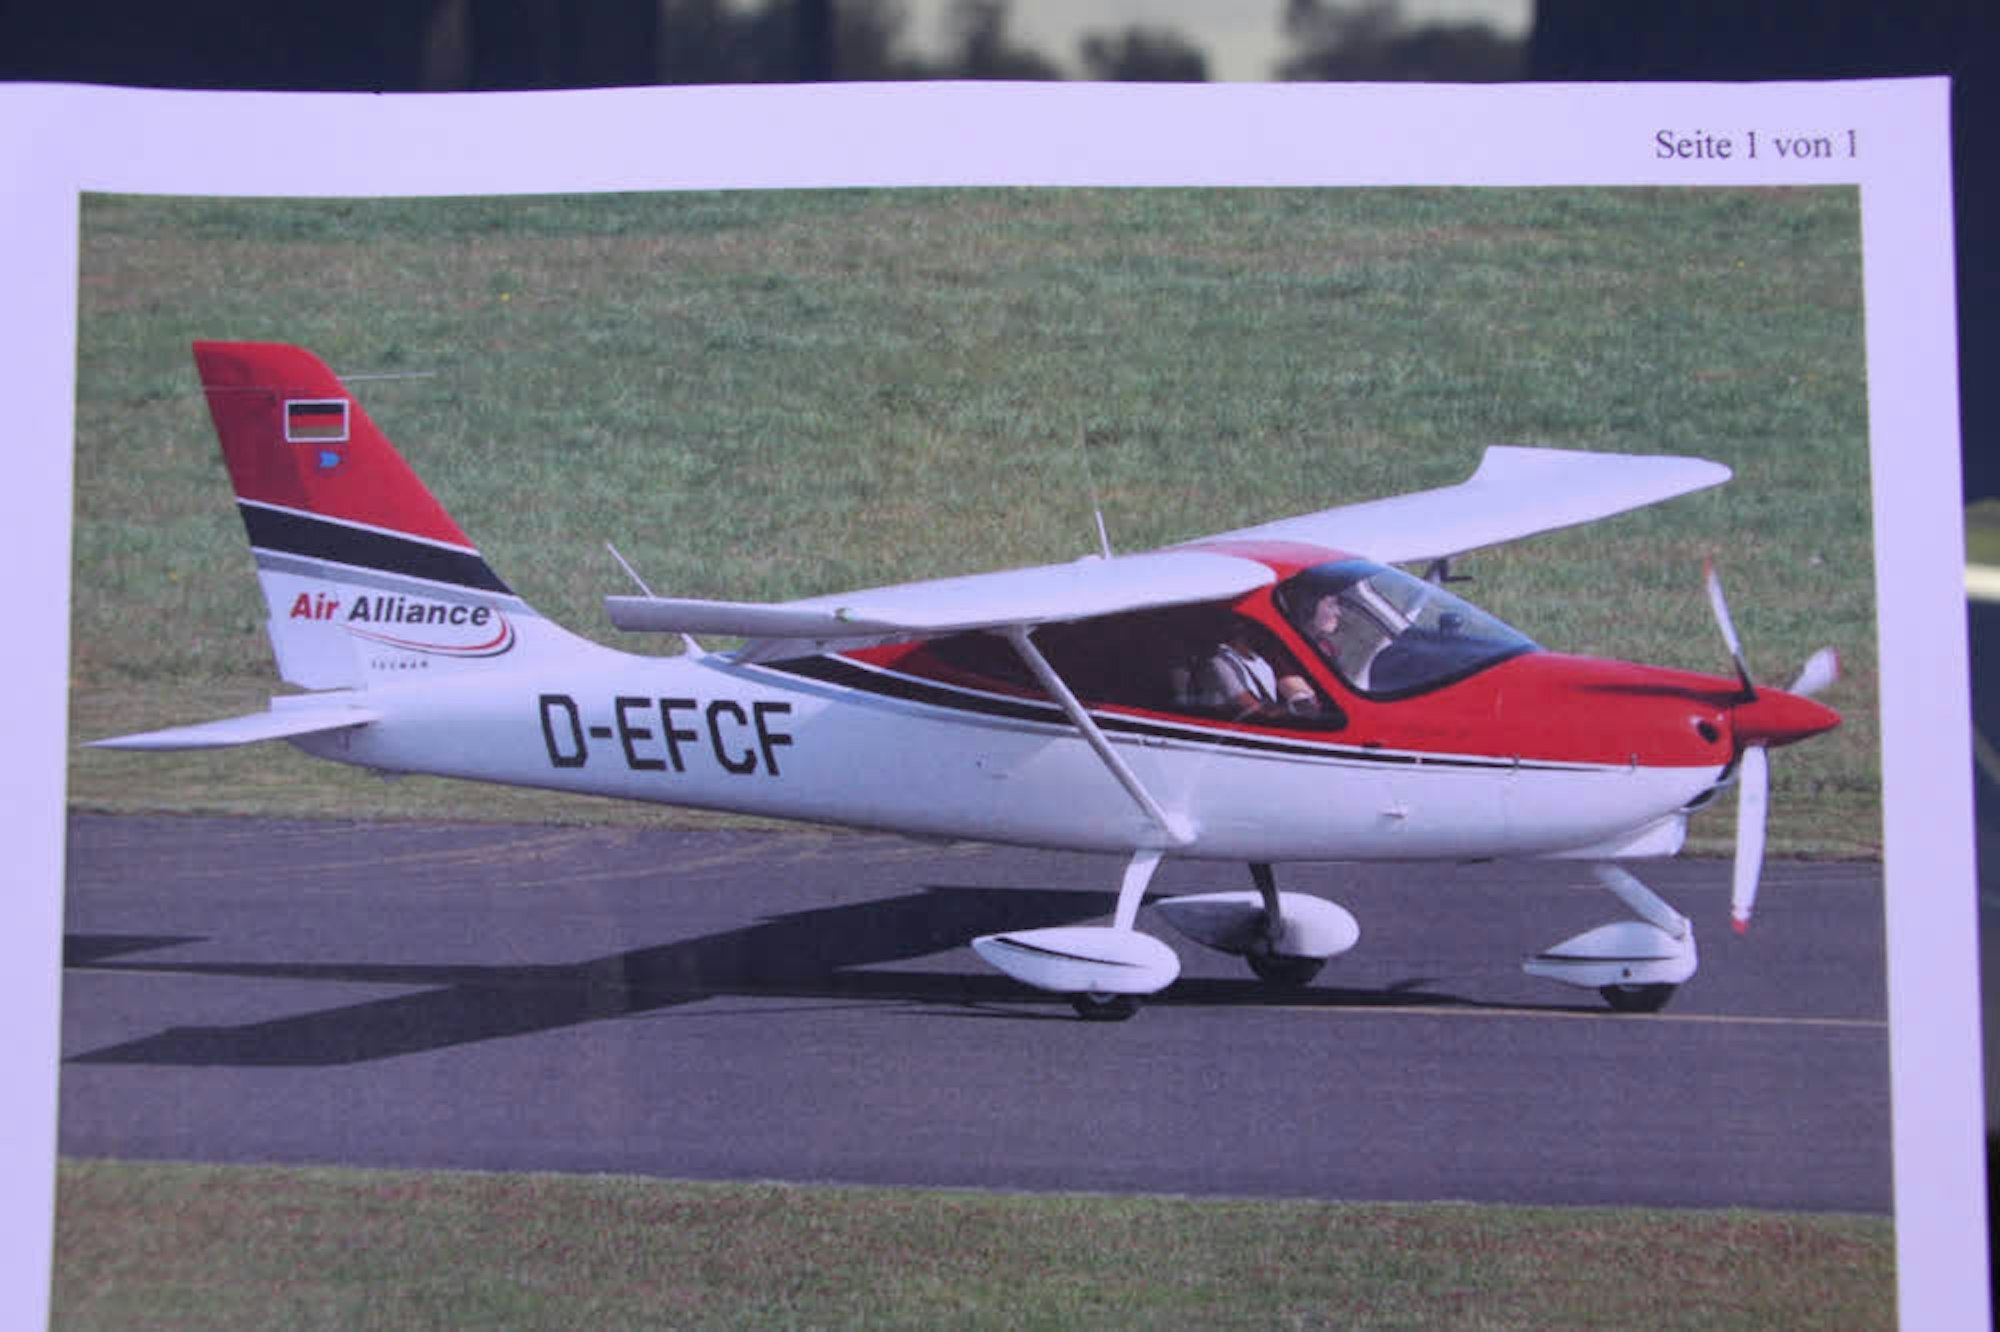 Die Tecnam P 2008 JC, hier ein Archivbild, ist ein leichtes Schulungsflugzeug, aber kein Ultraleichtflugzeug.